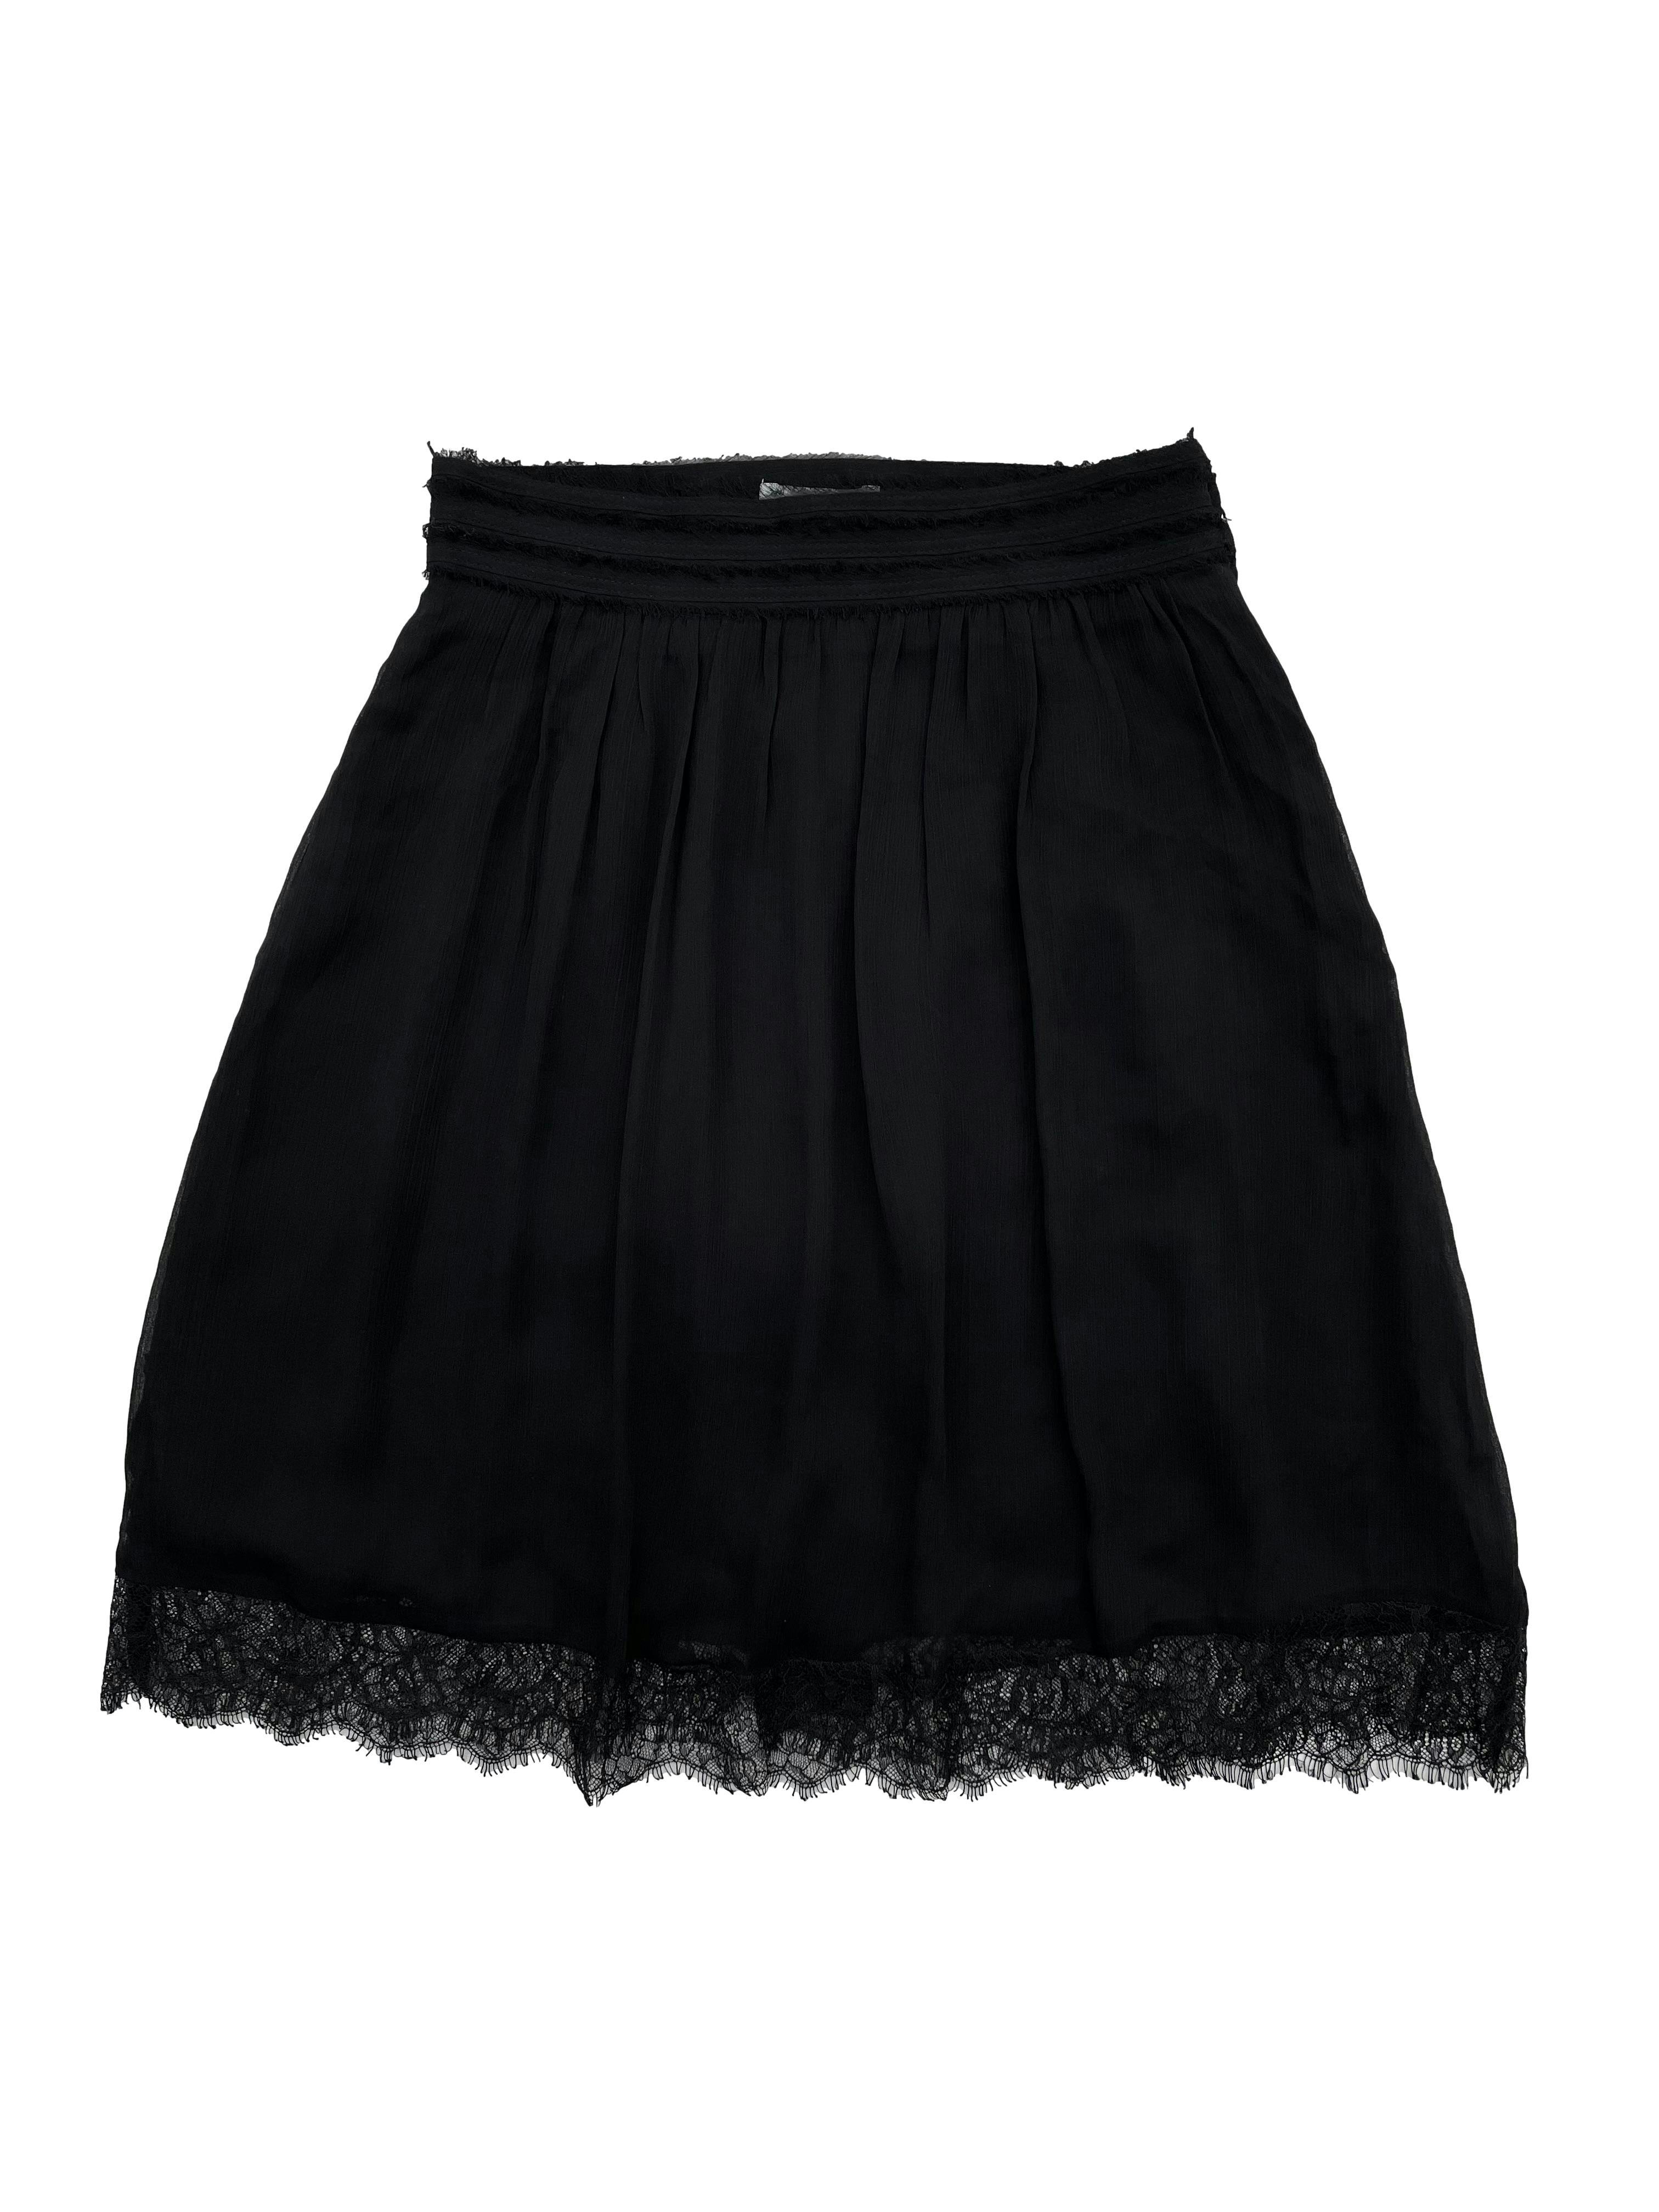 Falda H&M de gasa negra con forro, detalles desflecados y blonda en la basta, lleva cierre lateral. Cintura: 64cm, Largo: 52cm